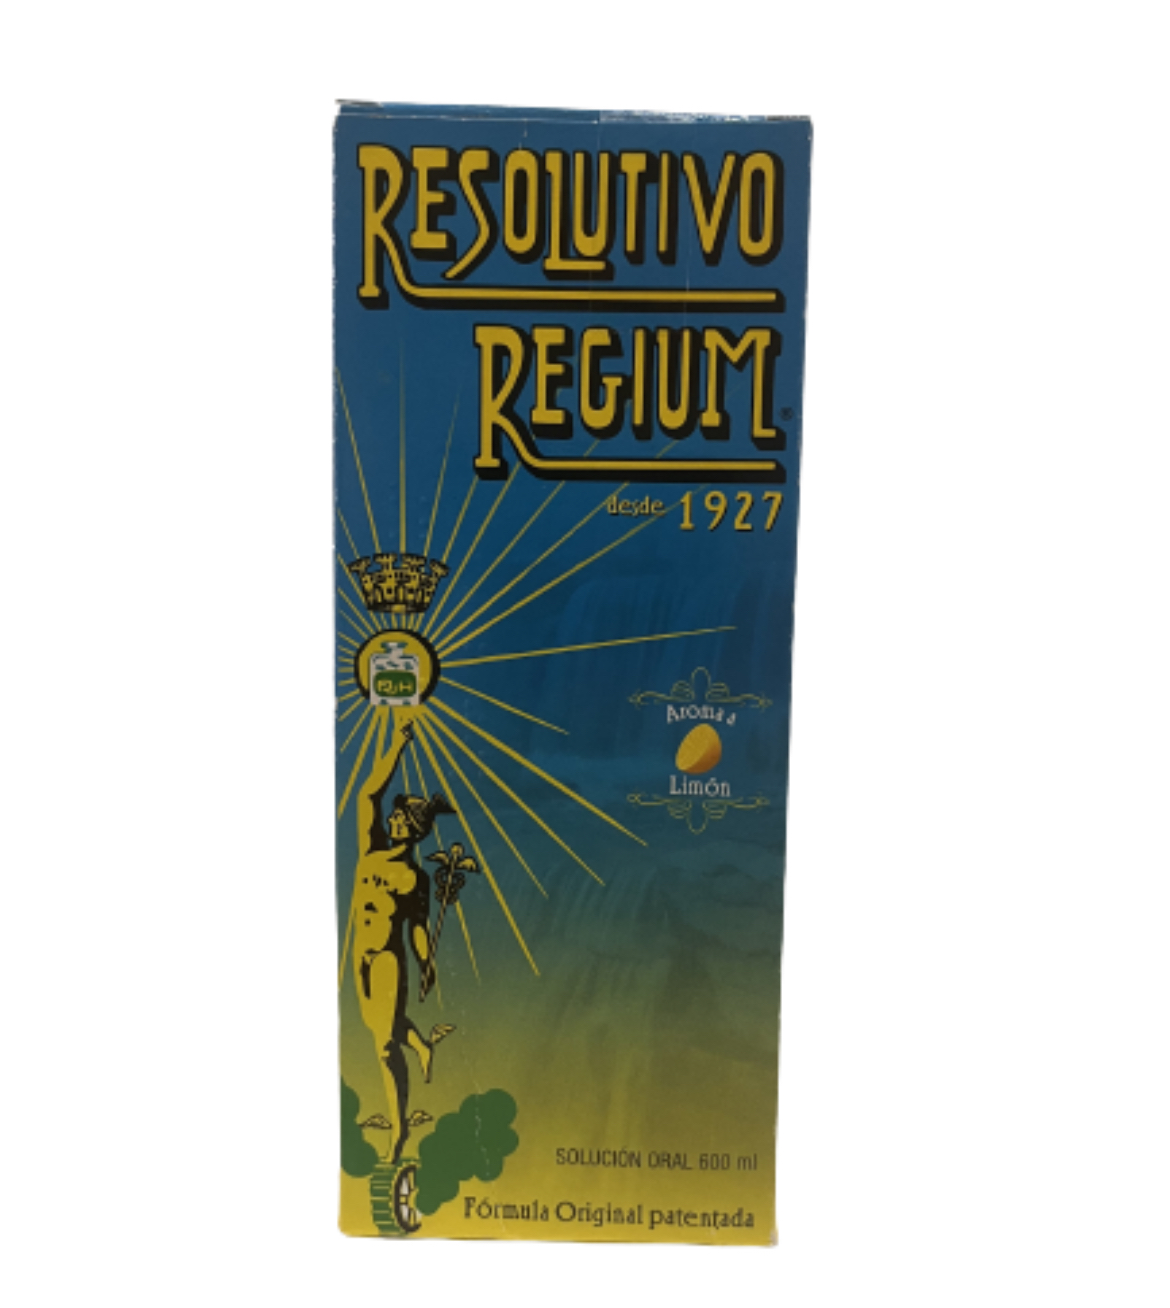 Resolutivo Regium 600ml